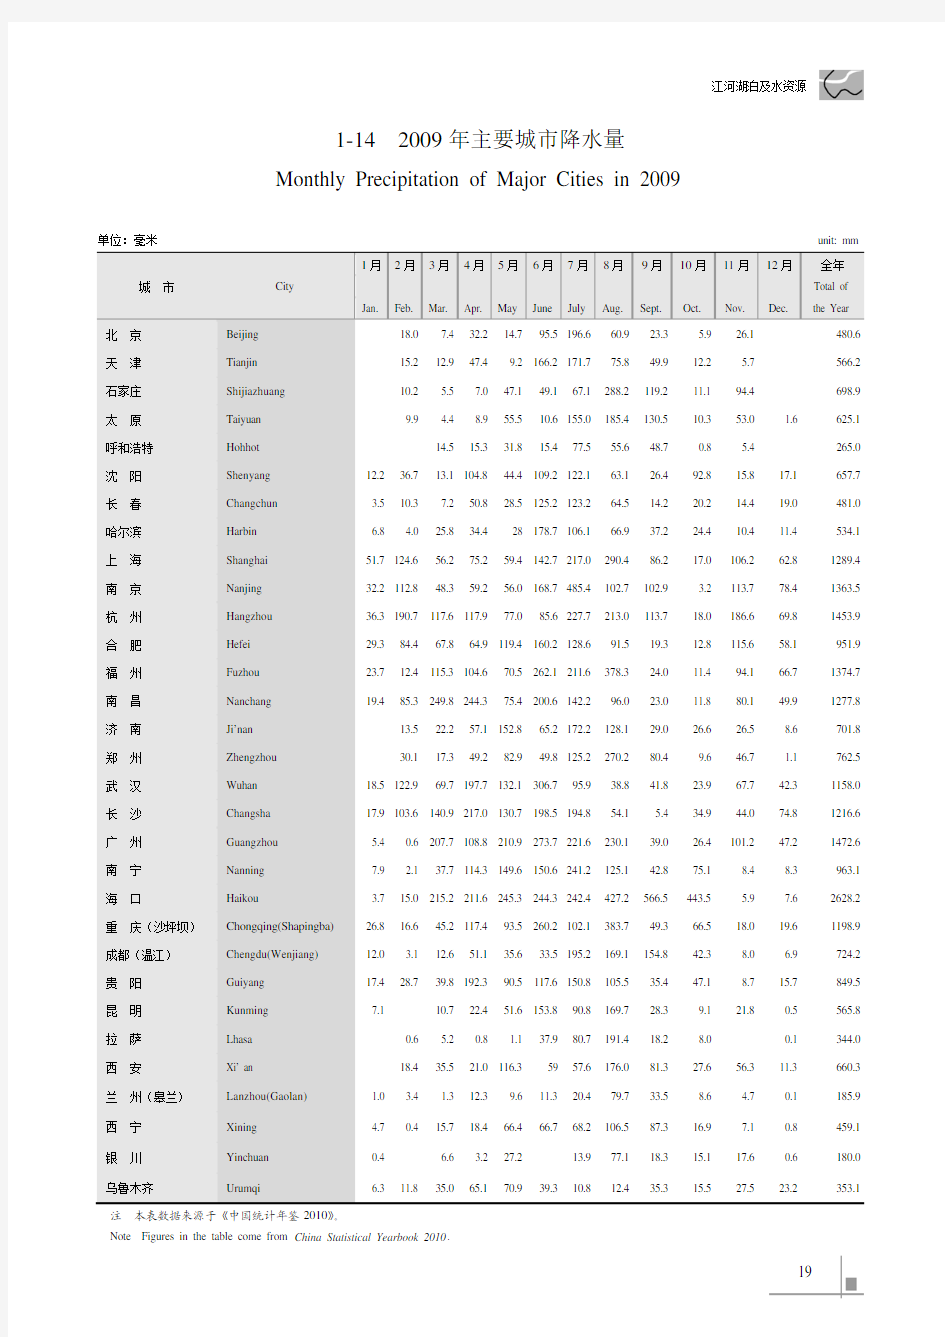 中国水利统计年鉴2010_1-142009年主要城市降水量_